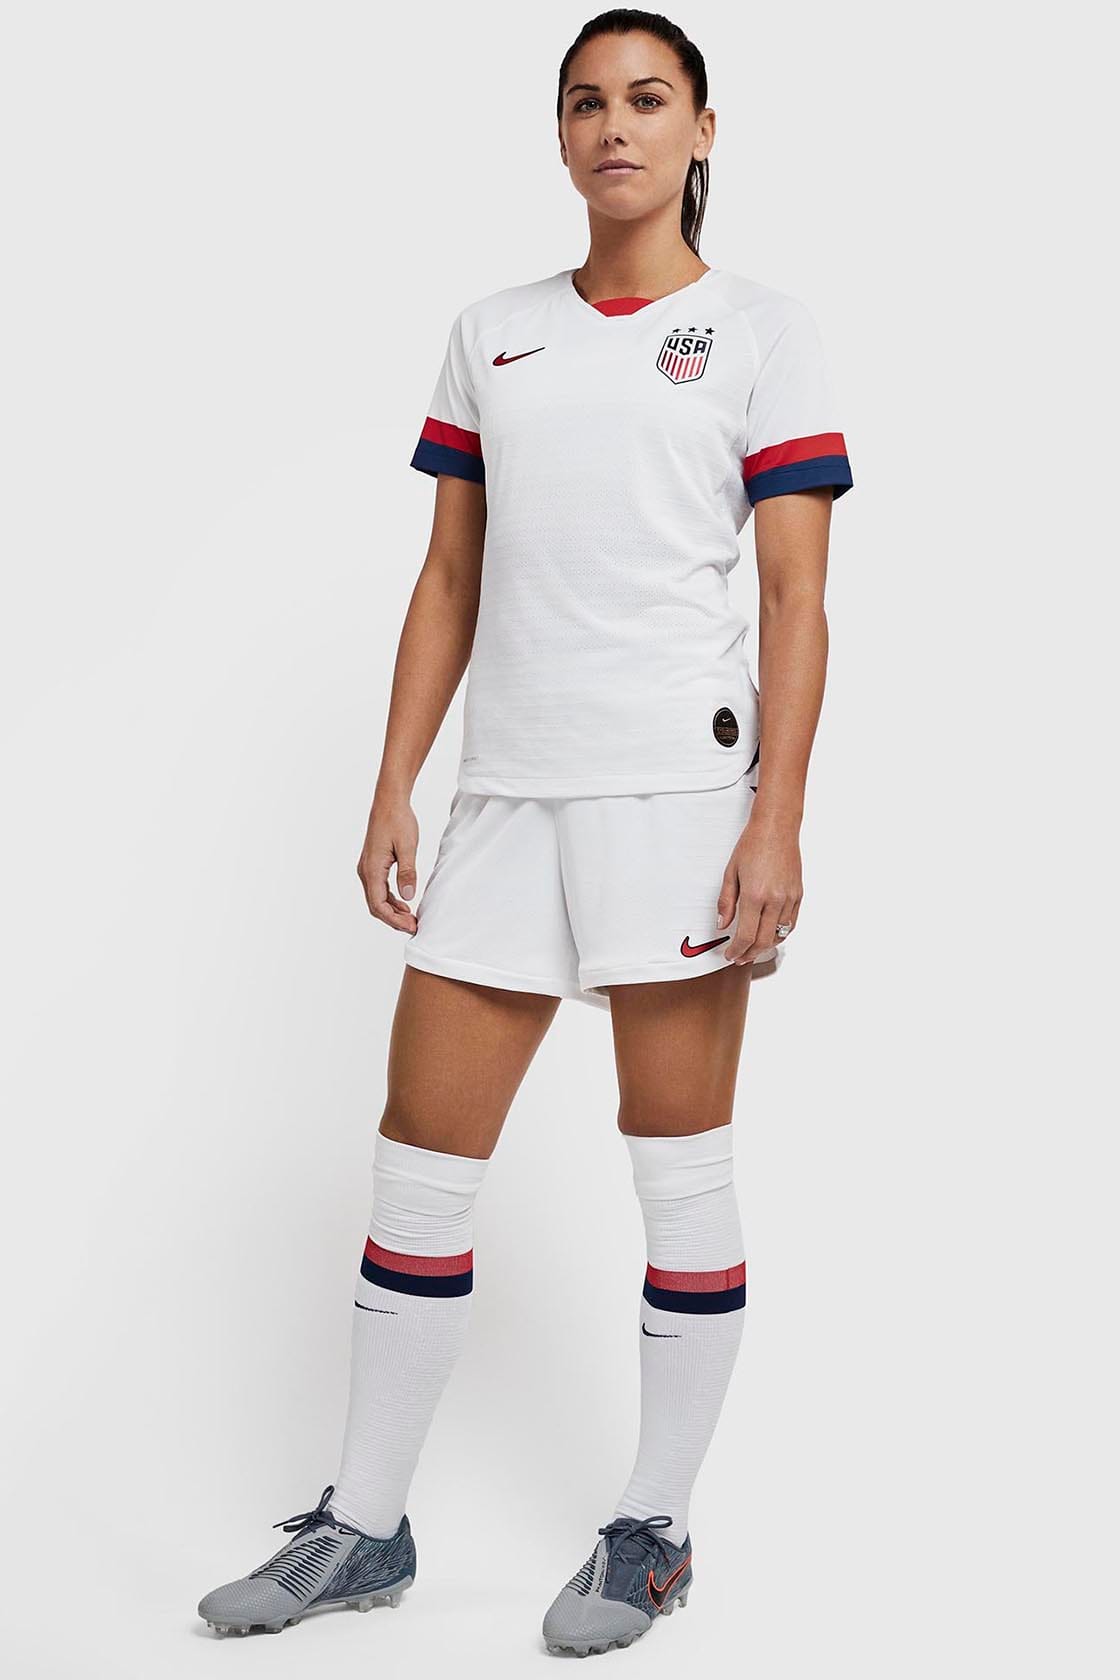 usa women's soccer world cup shirt